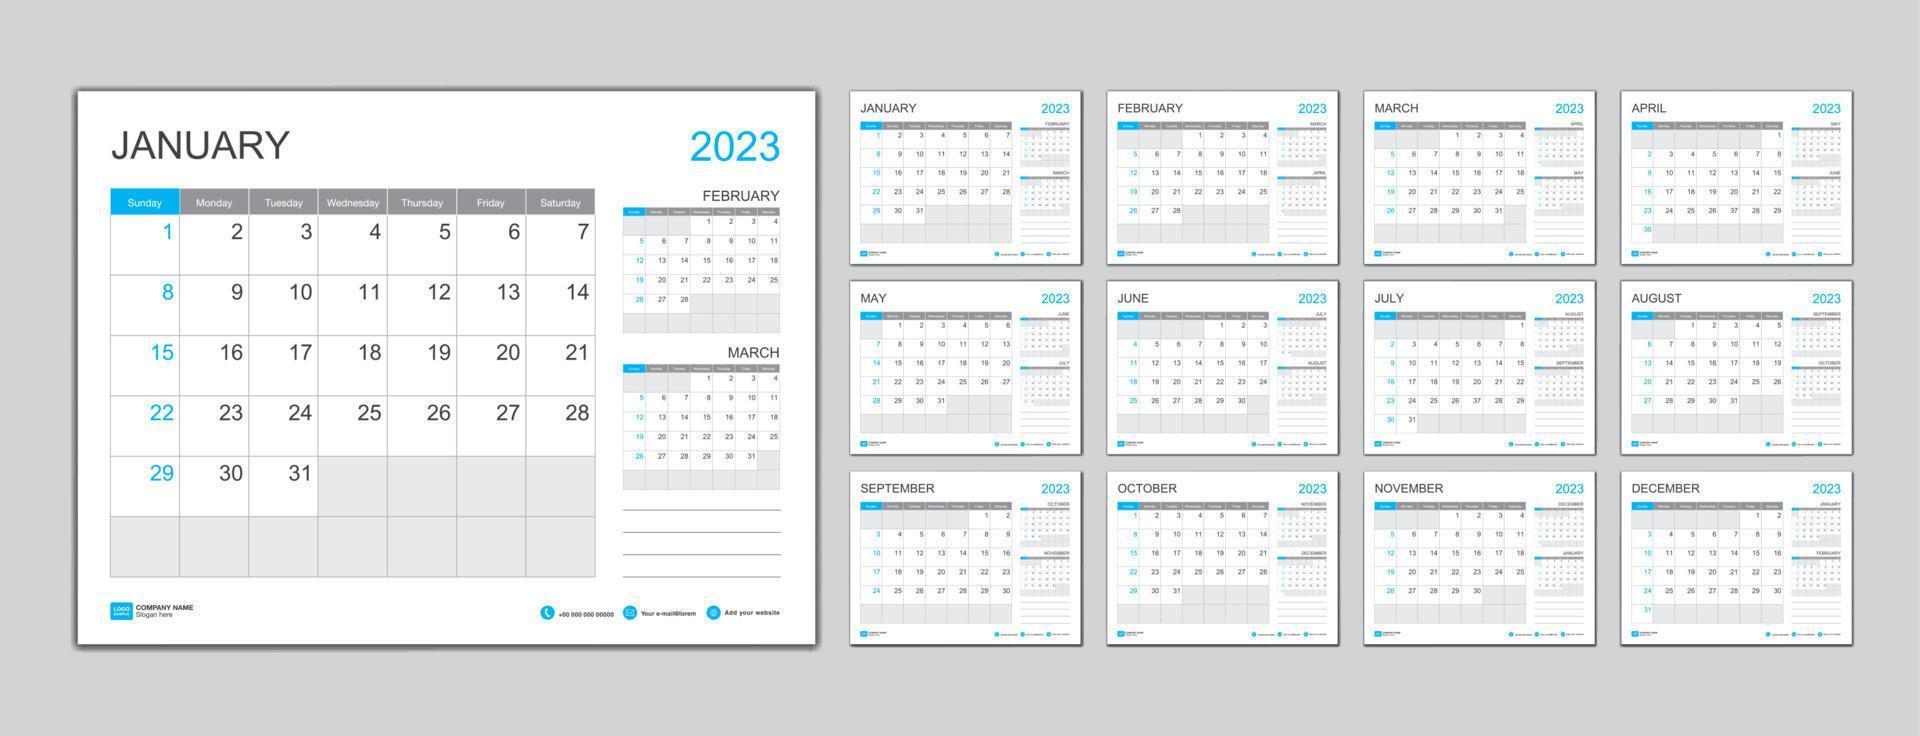 plantilla de calendario mensual para el año 2023, planificador del año 2023, la semana comienza el domingo. calendario de pared en un estilo minimalista, plantilla de calendario de escritorio 2023, diseño de calendario de año nuevo, vector de plantilla de negocio